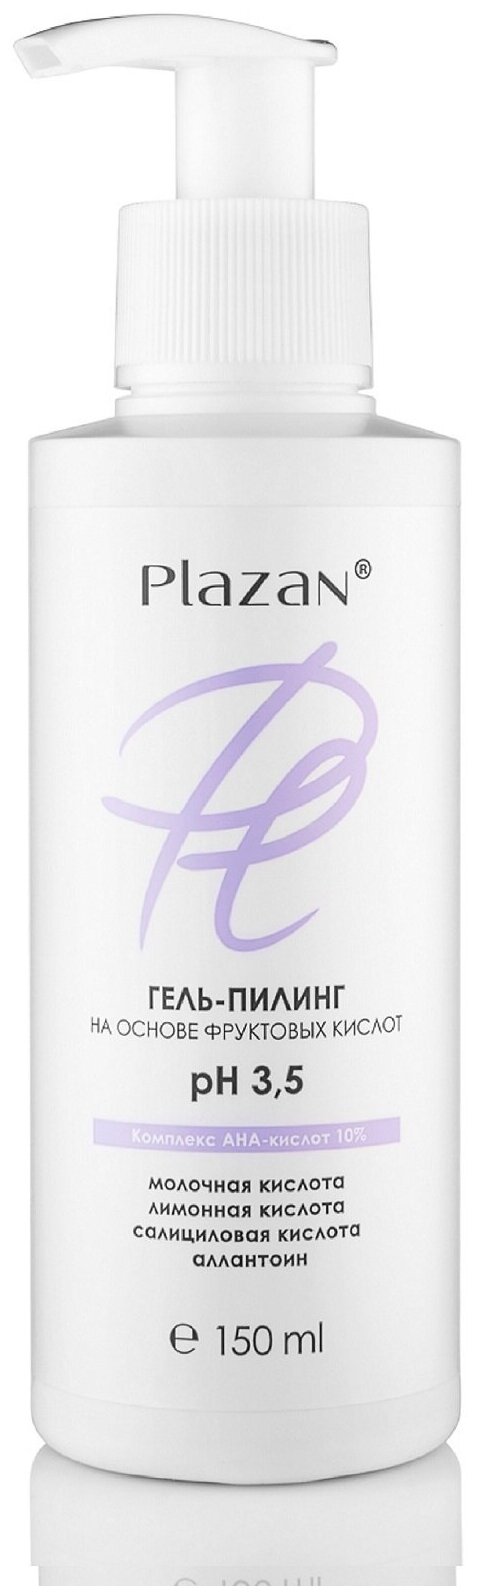 Plazan гель-пилинг для лица на основе фруктовых кислот ph 35 Комплекс AHA кислот 10%